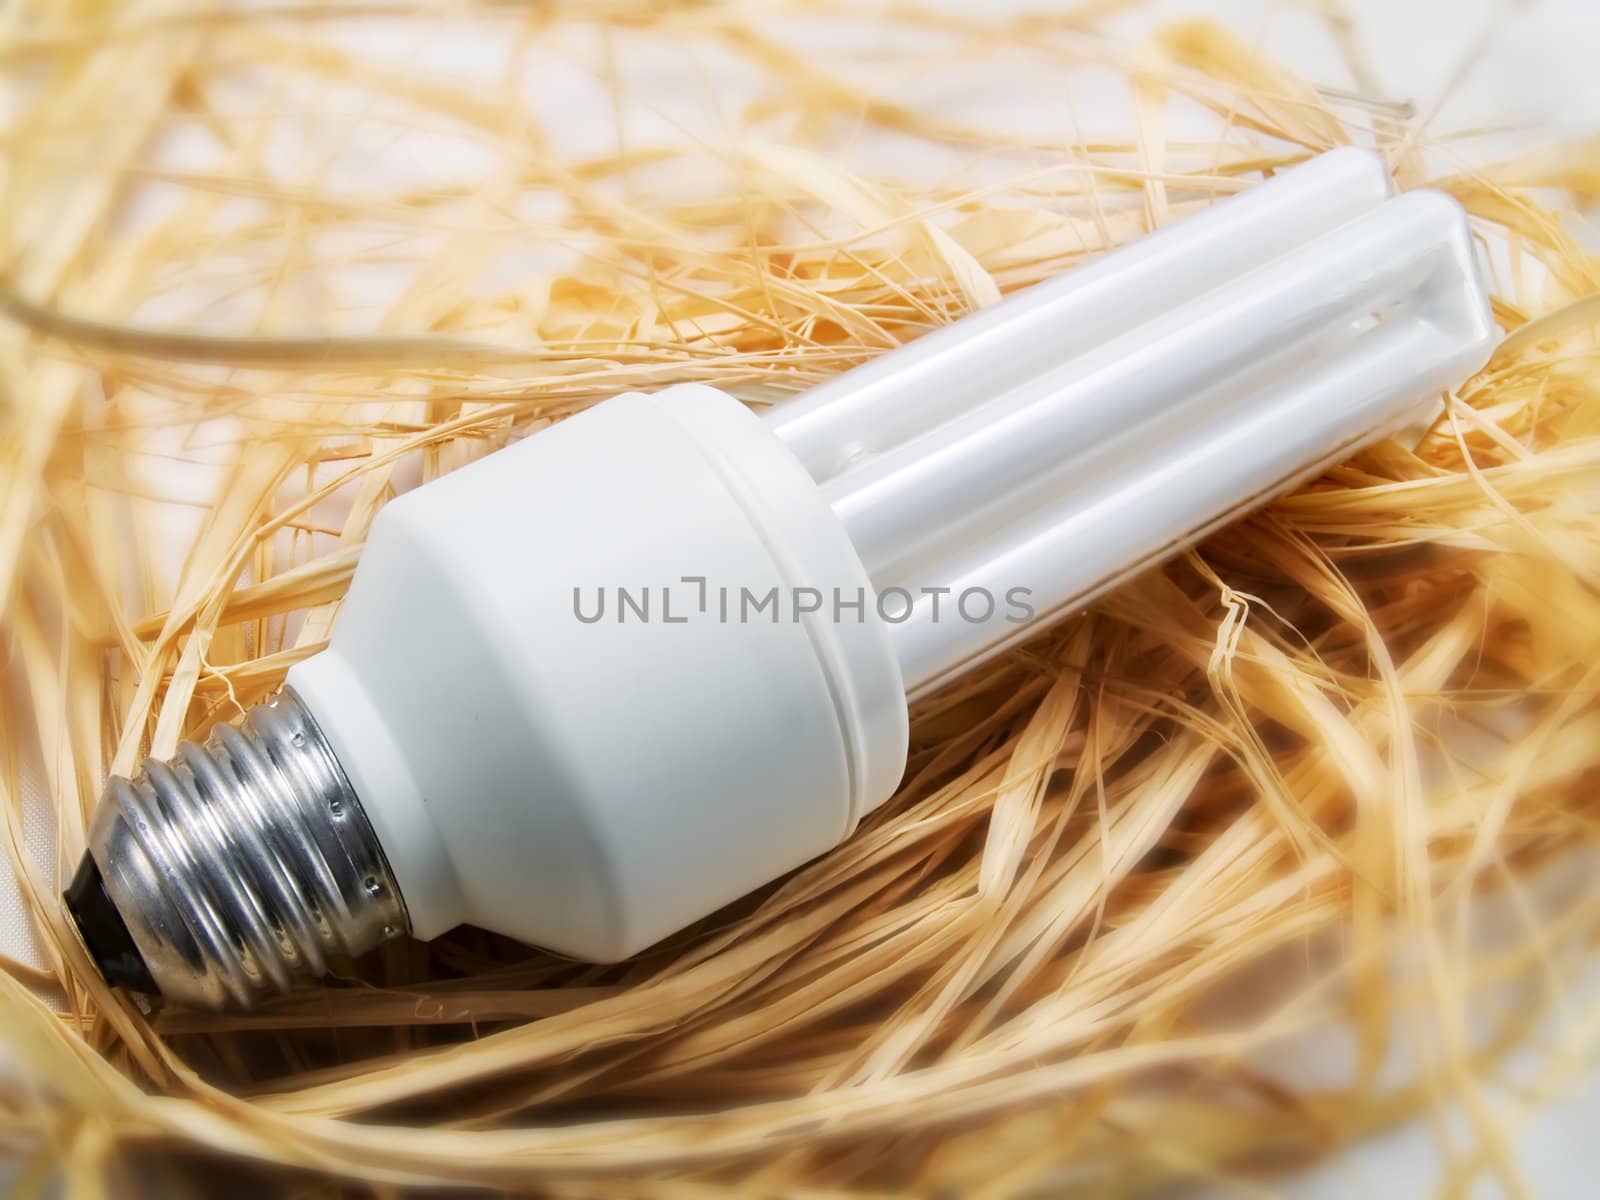 Low energy light bulb